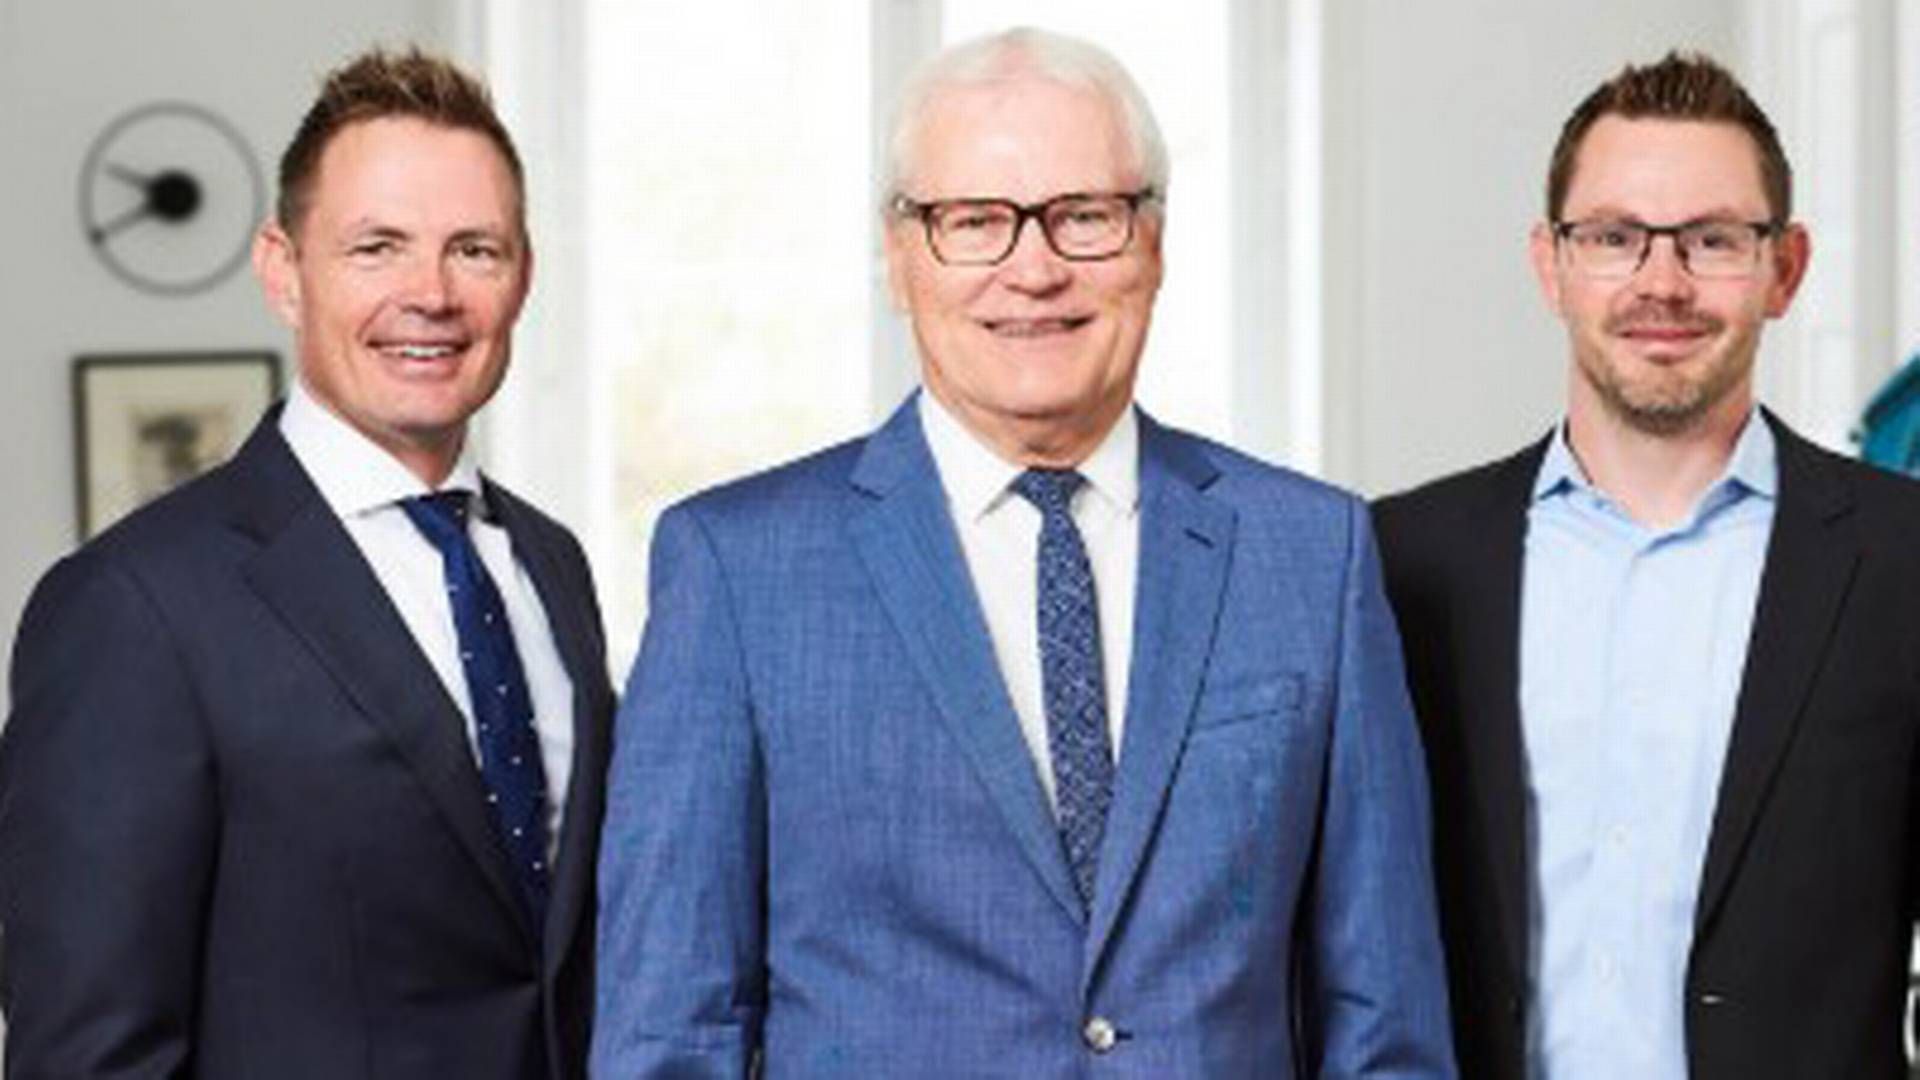 Den ene søn Morten Borup Demant (t.v.) er udviklingschef, faderen Henning Borup Jacobsen (i midten) er adm. direktør, mens den anden søn John Borup Jacobsen (t.h.) er økonomichef. | Foto: PR / Cervo Gruppen